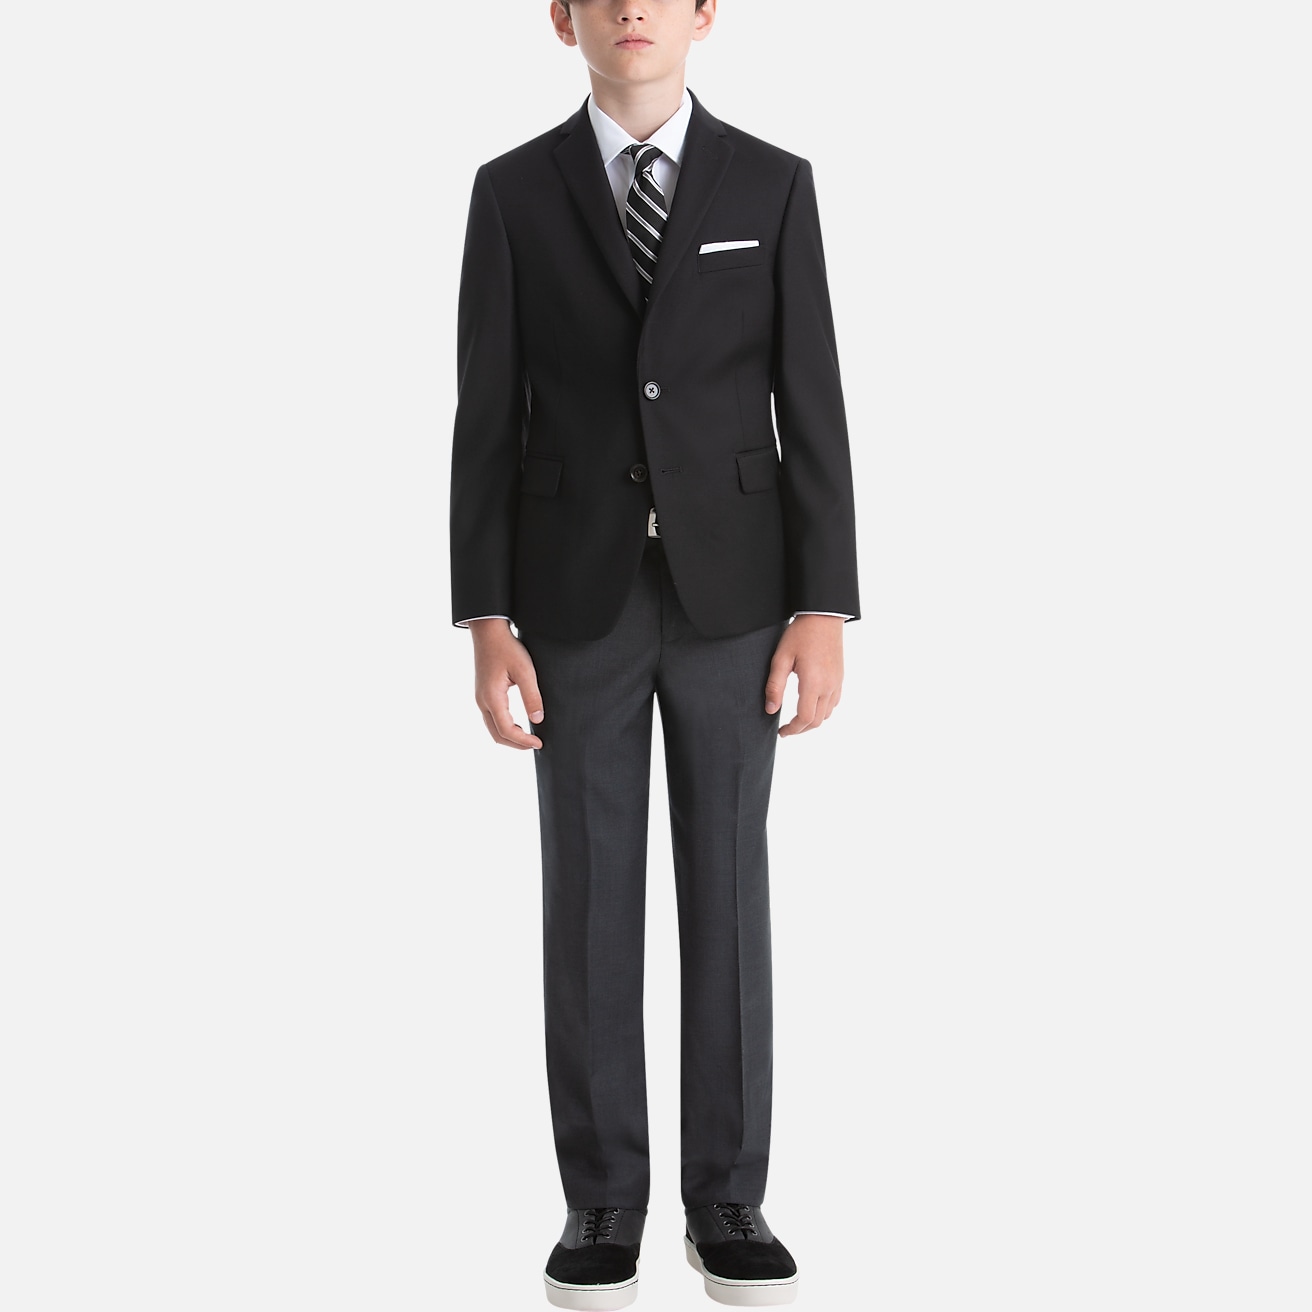 Lauren By Ralph Lauren Boys (Sizes 8-20) Suit Separates Pants